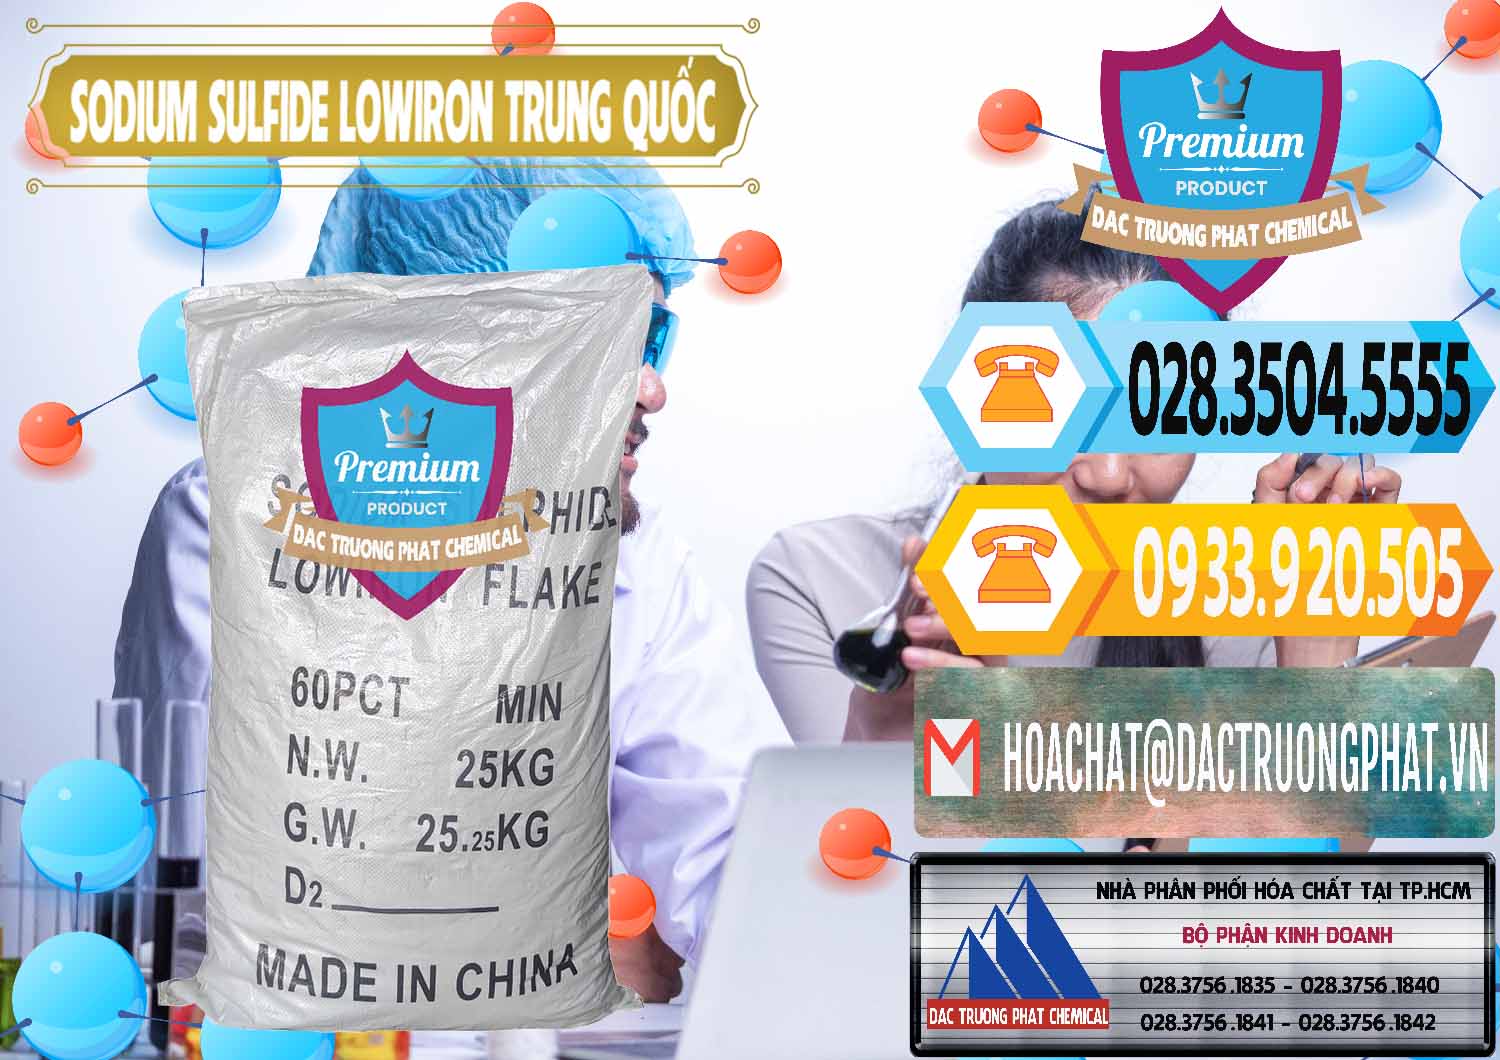 Công ty bán - cung cấp Sodium Sulfide NA2S – Đá Thối Lowiron Trung Quốc China - 0227 - Cty phân phối và cung cấp hóa chất tại TP.HCM - hoachattayrua.net